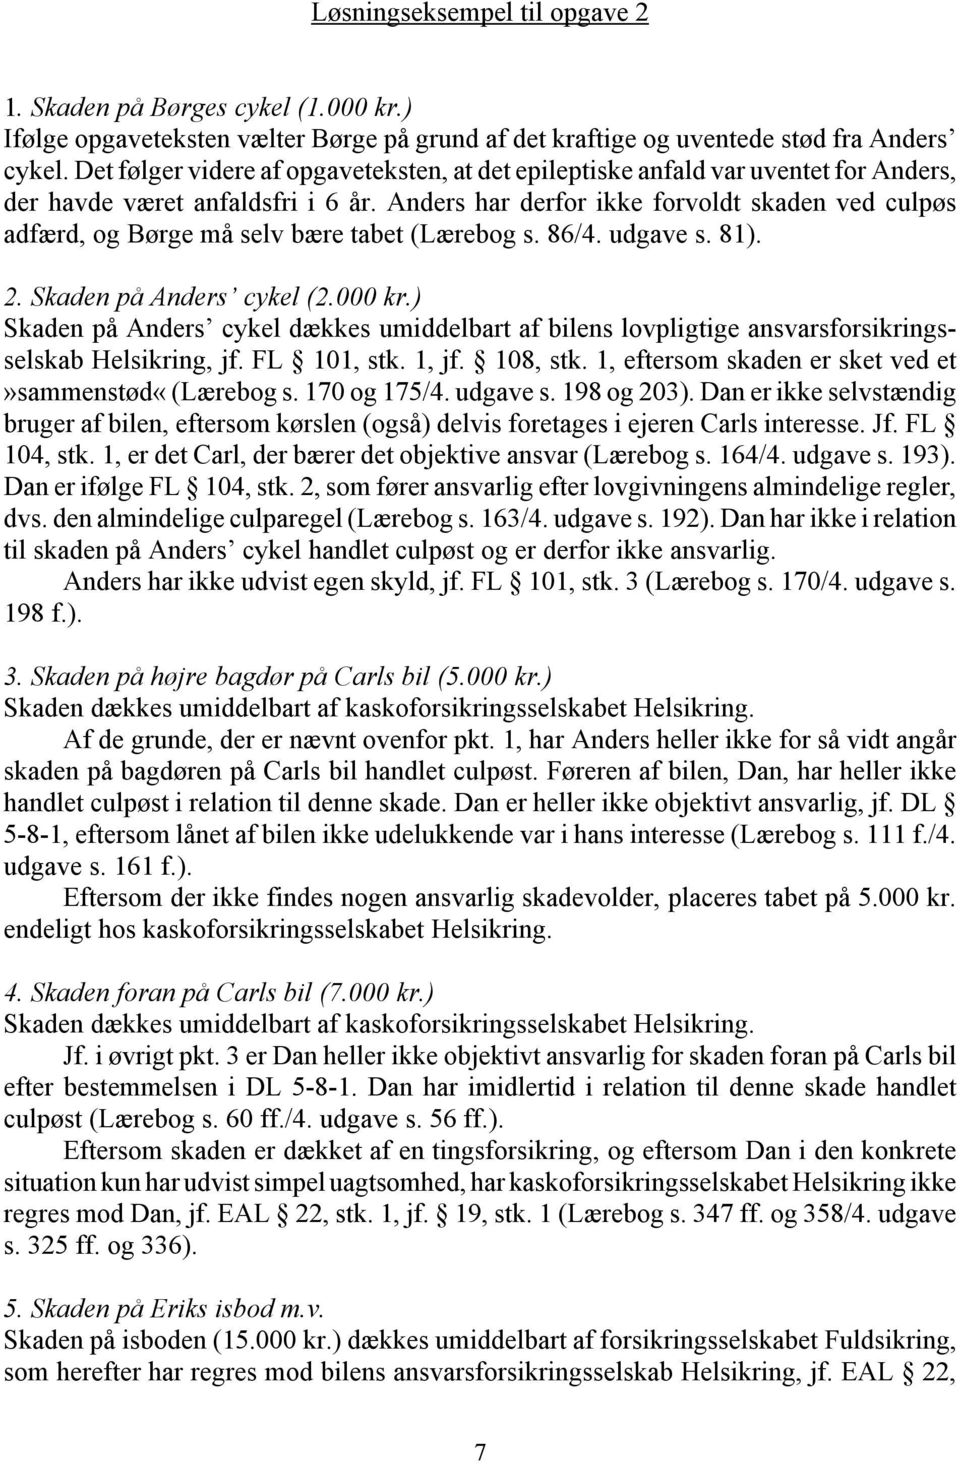 Anders har derfor ikke forvoldt skaden ved culpøs adfærd, og Børge må selv bære tabet (Lærebog s. 86/4. udgave s. 81). 2. Skaden på Anders cykel (2.000 kr.